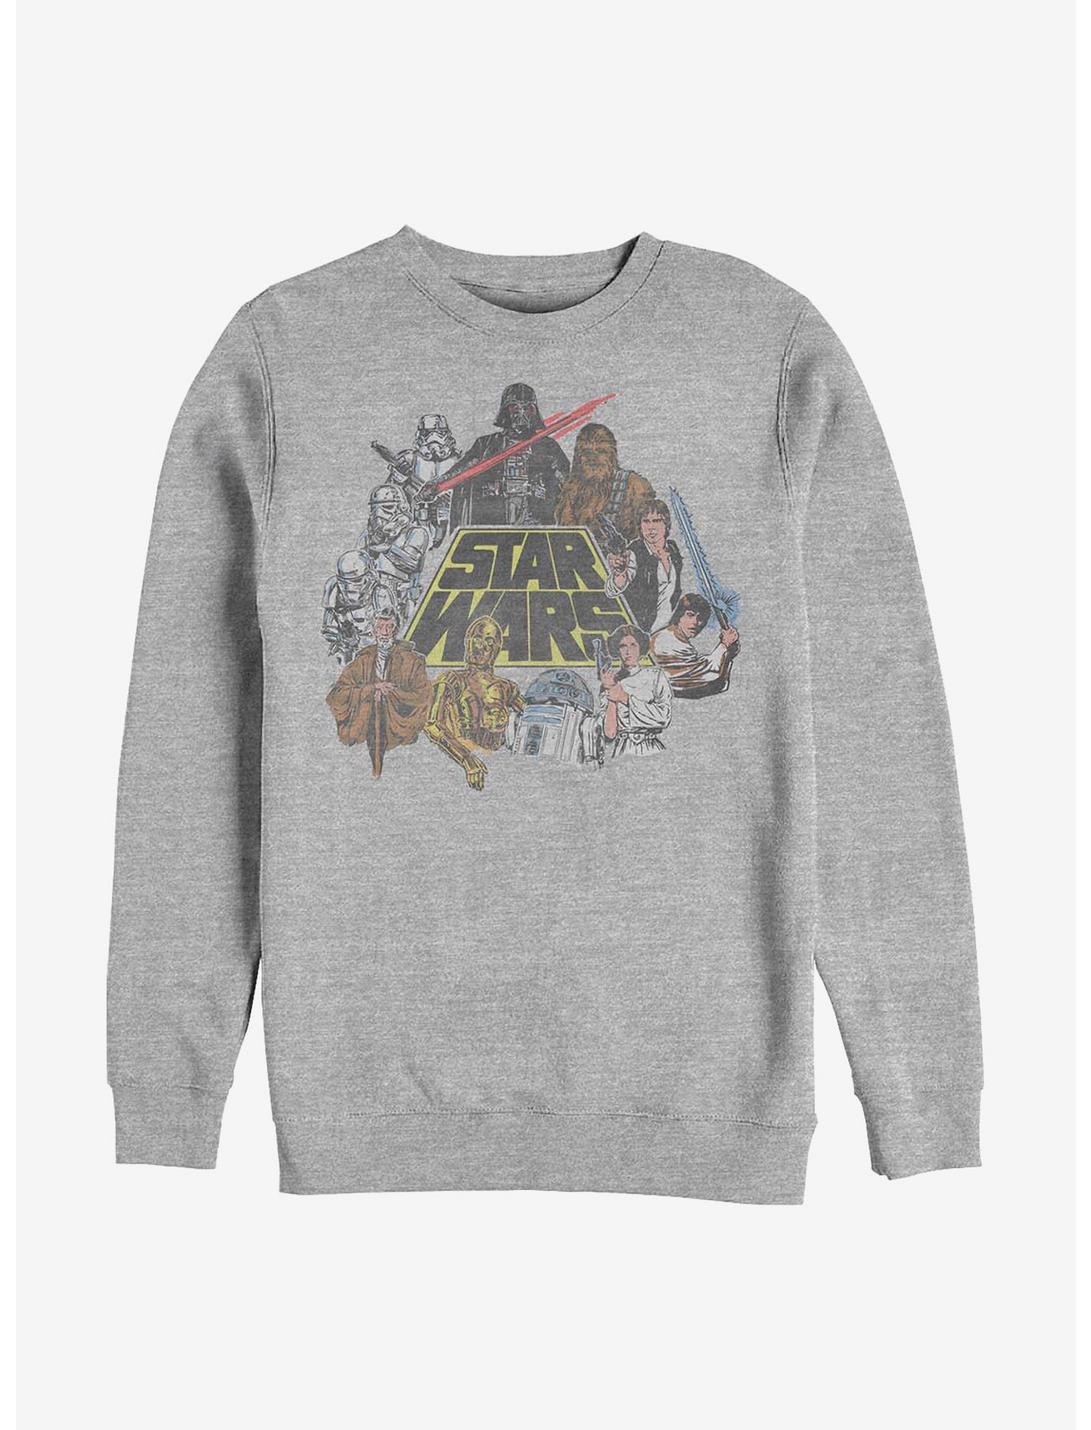 Star Wars In Color Crew Sweatshirt, ATH HTR, hi-res